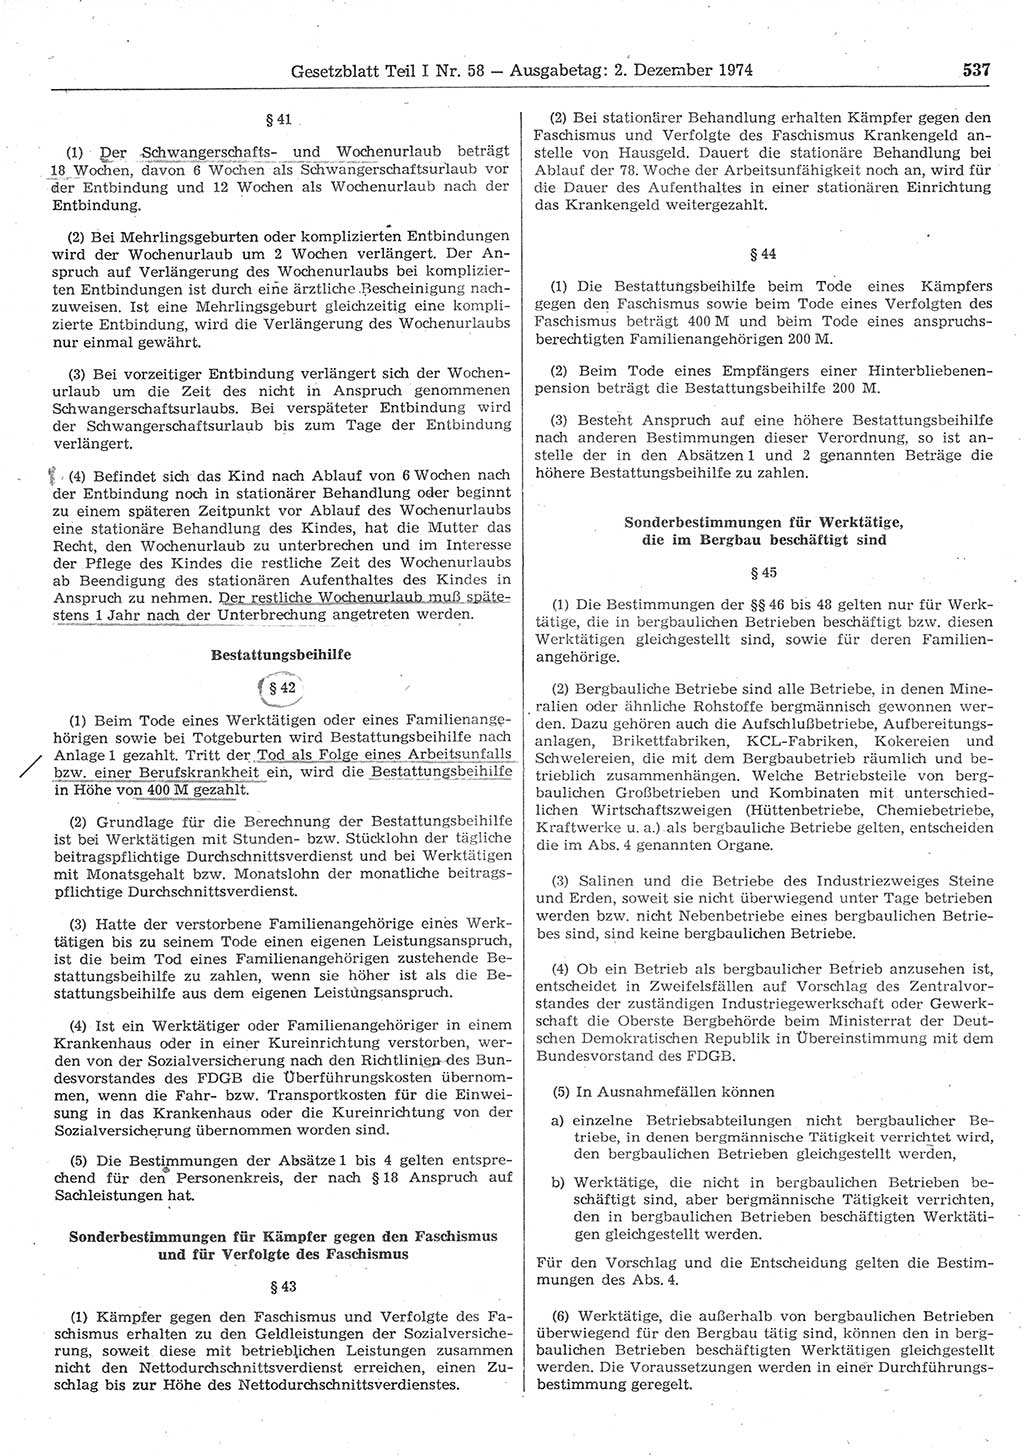 Gesetzblatt (GBl.) der Deutschen Demokratischen Republik (DDR) Teil Ⅰ 1974, Seite 537 (GBl. DDR Ⅰ 1974, S. 537)